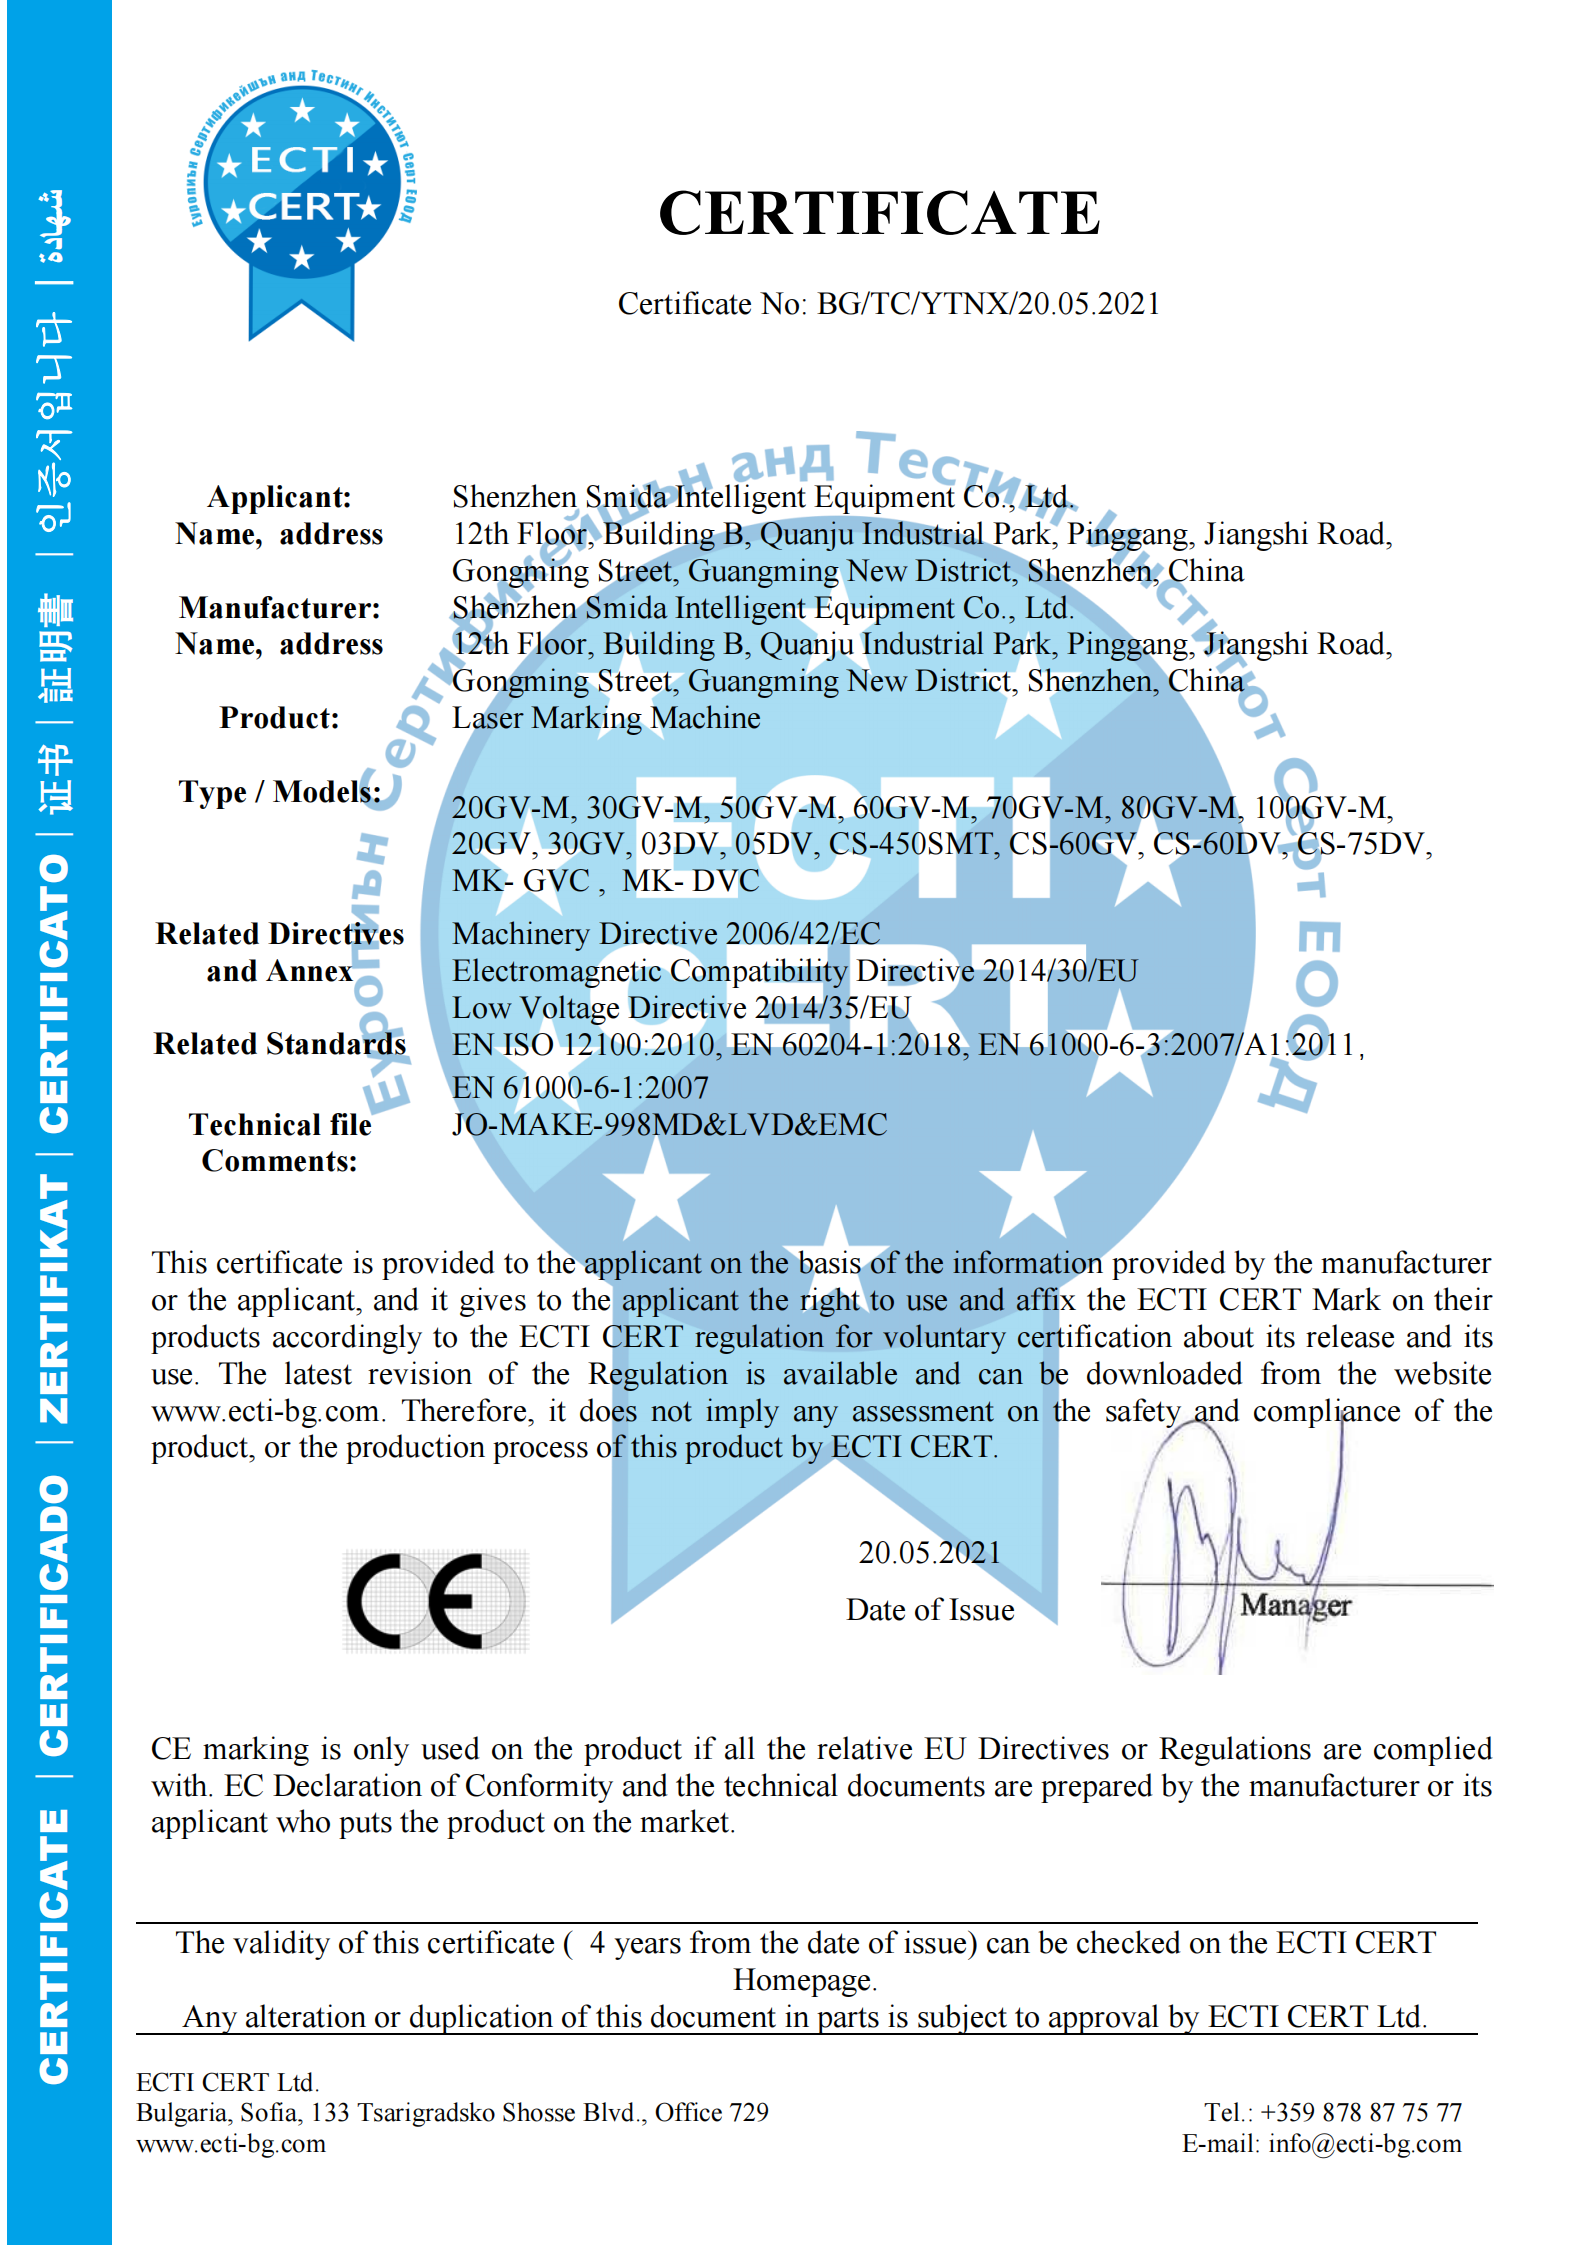 လေဆာအမှတ်အသားစက်အတွက် CE လက်မှတ် ထည့်ပေးထားသည်။